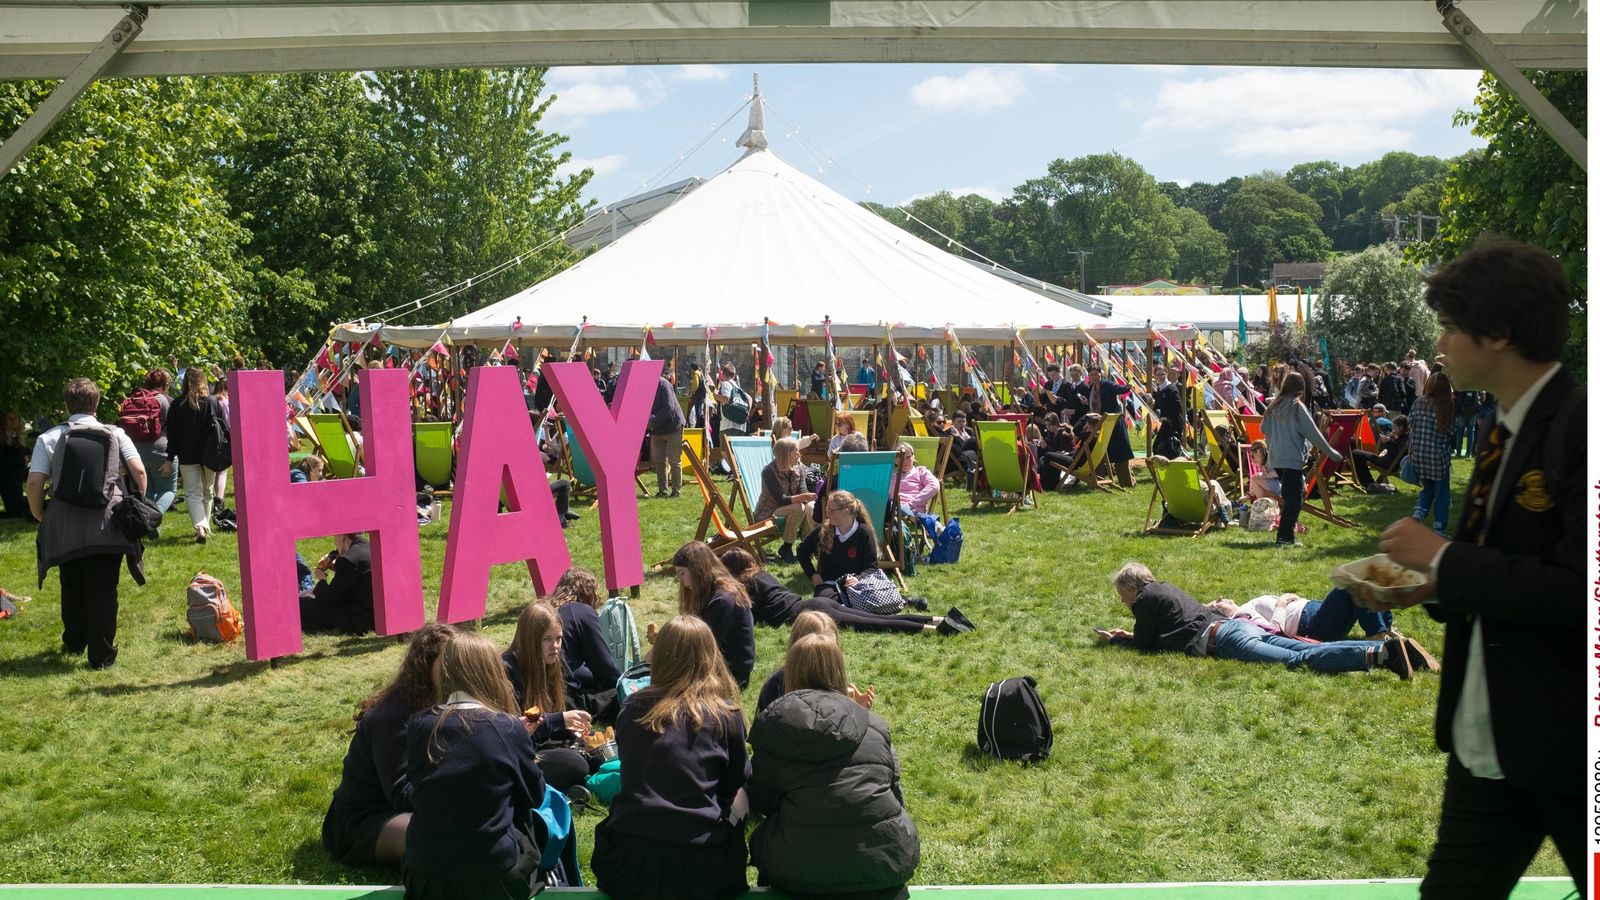 Hay Festival се отказва от спонсора си заради предполагаеми връзки с изкопаеми горива и израелска отбранителна промишленост